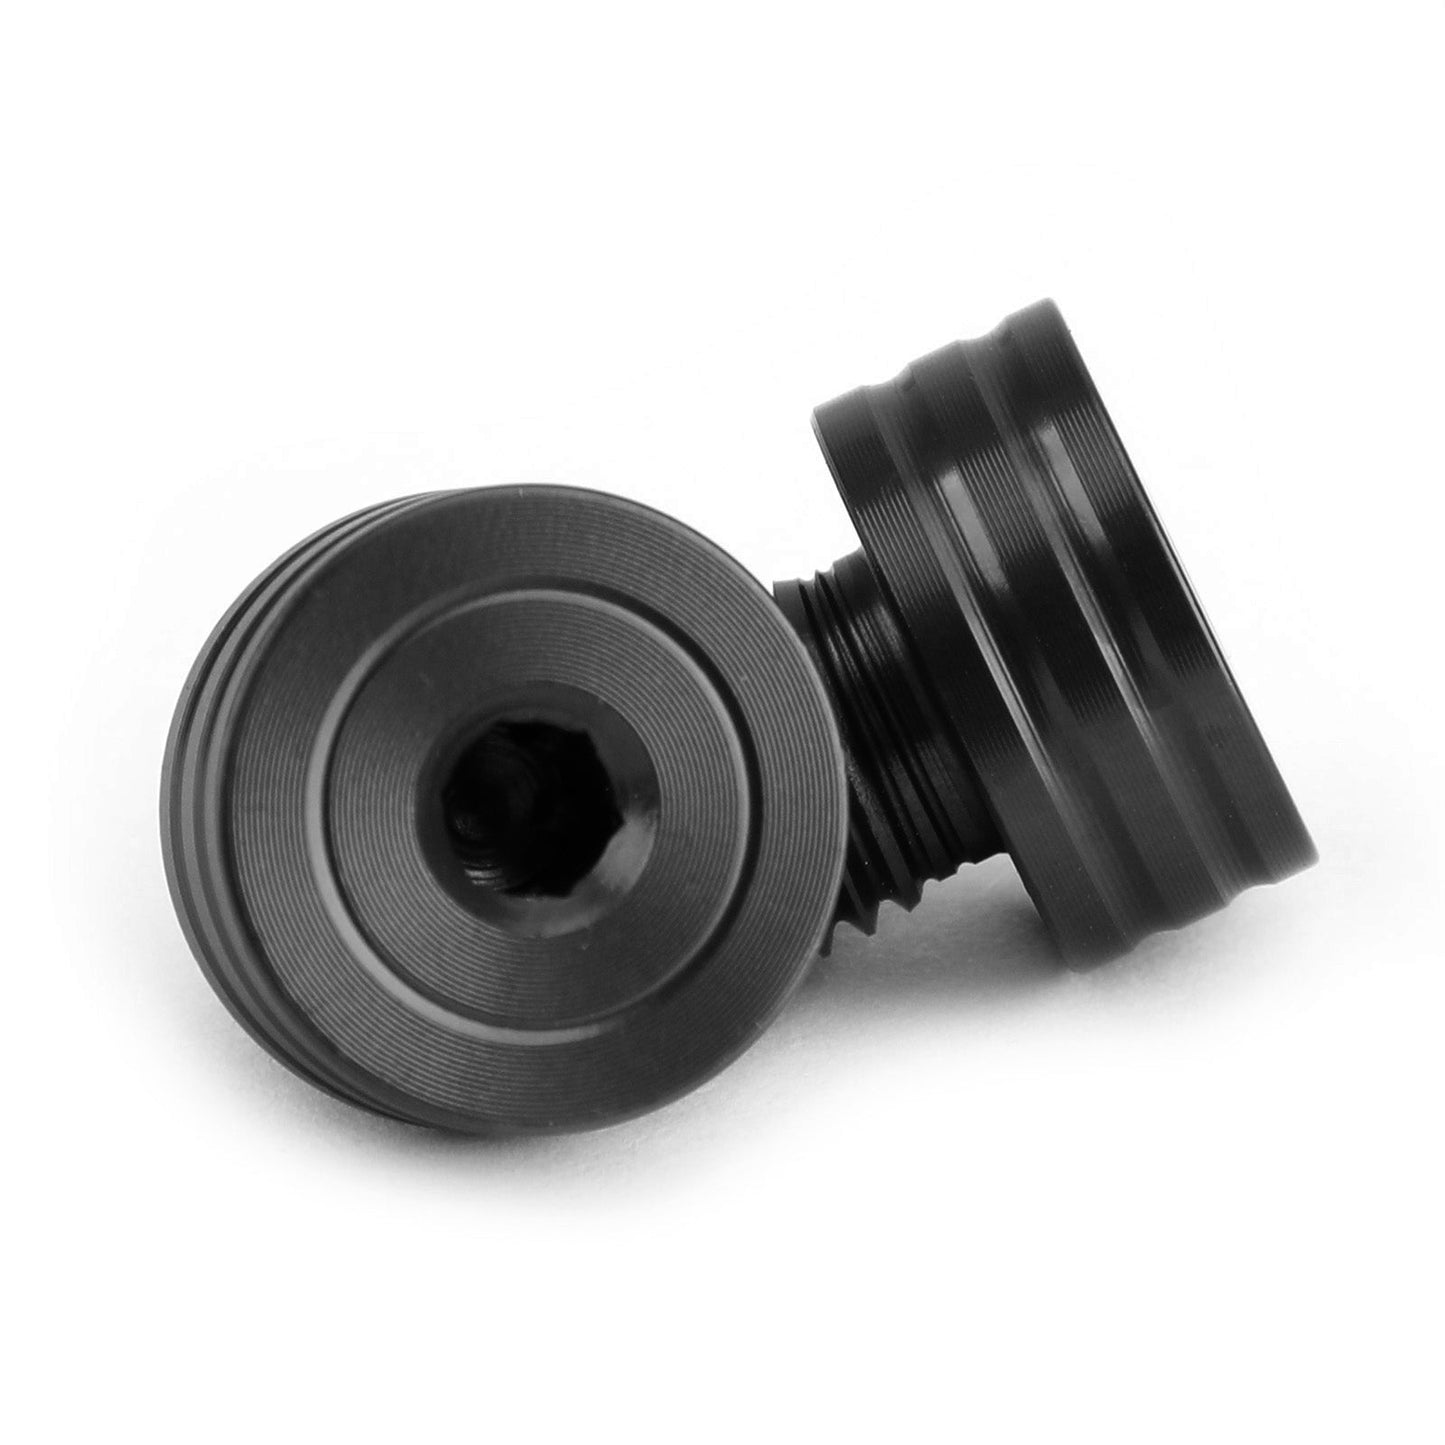 M10x1.25mm Mirror Hole Plugs Screws for Suzuki GSR400 DL650 SV650 GSX-S750 Black